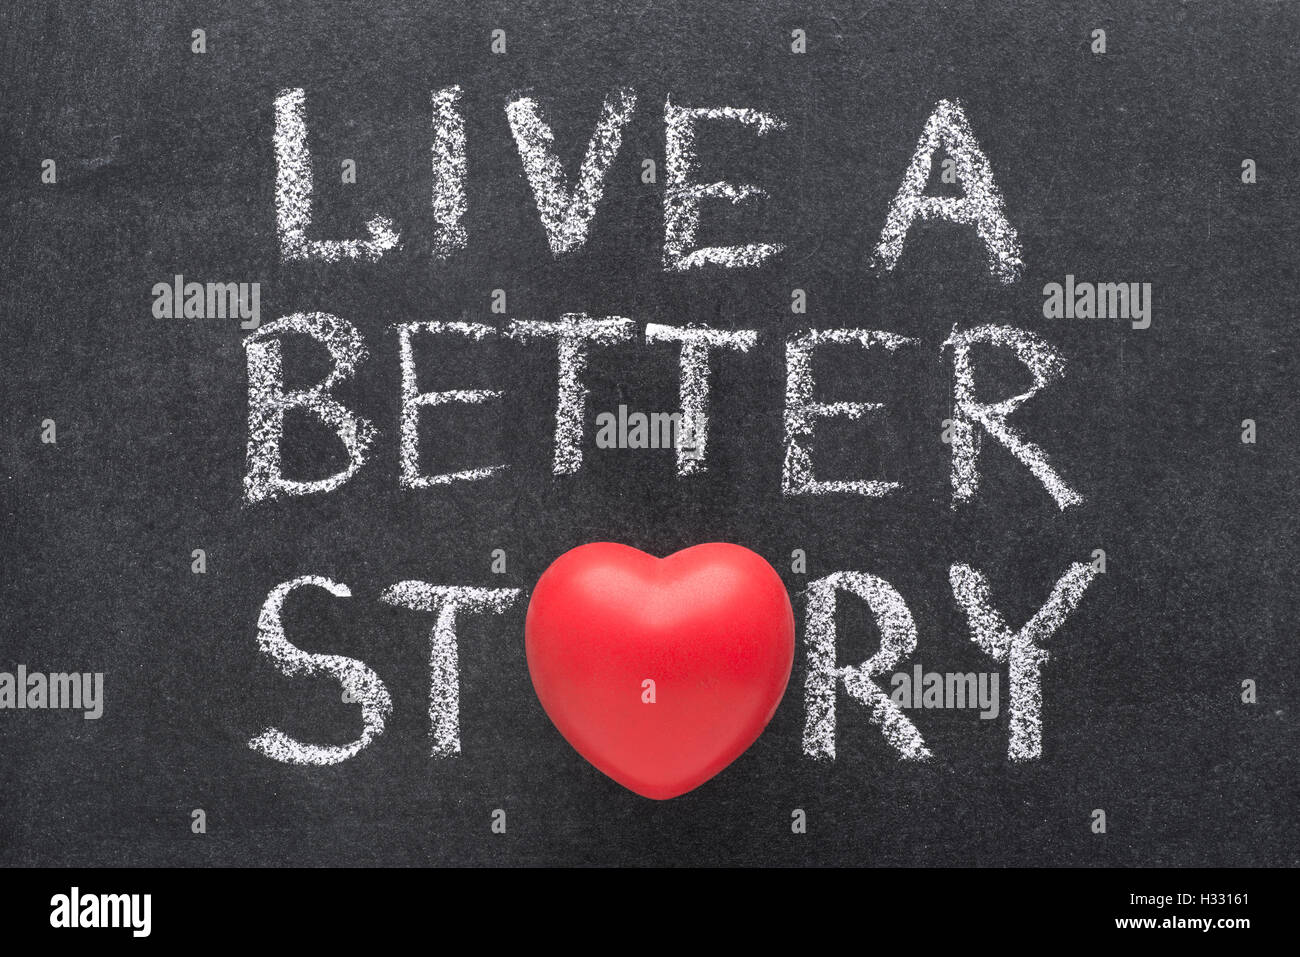 Leben Sie eine bessere Geschichte Formulierung handschriftlich auf Tafel mit Herzsymbol statt O Stockfoto